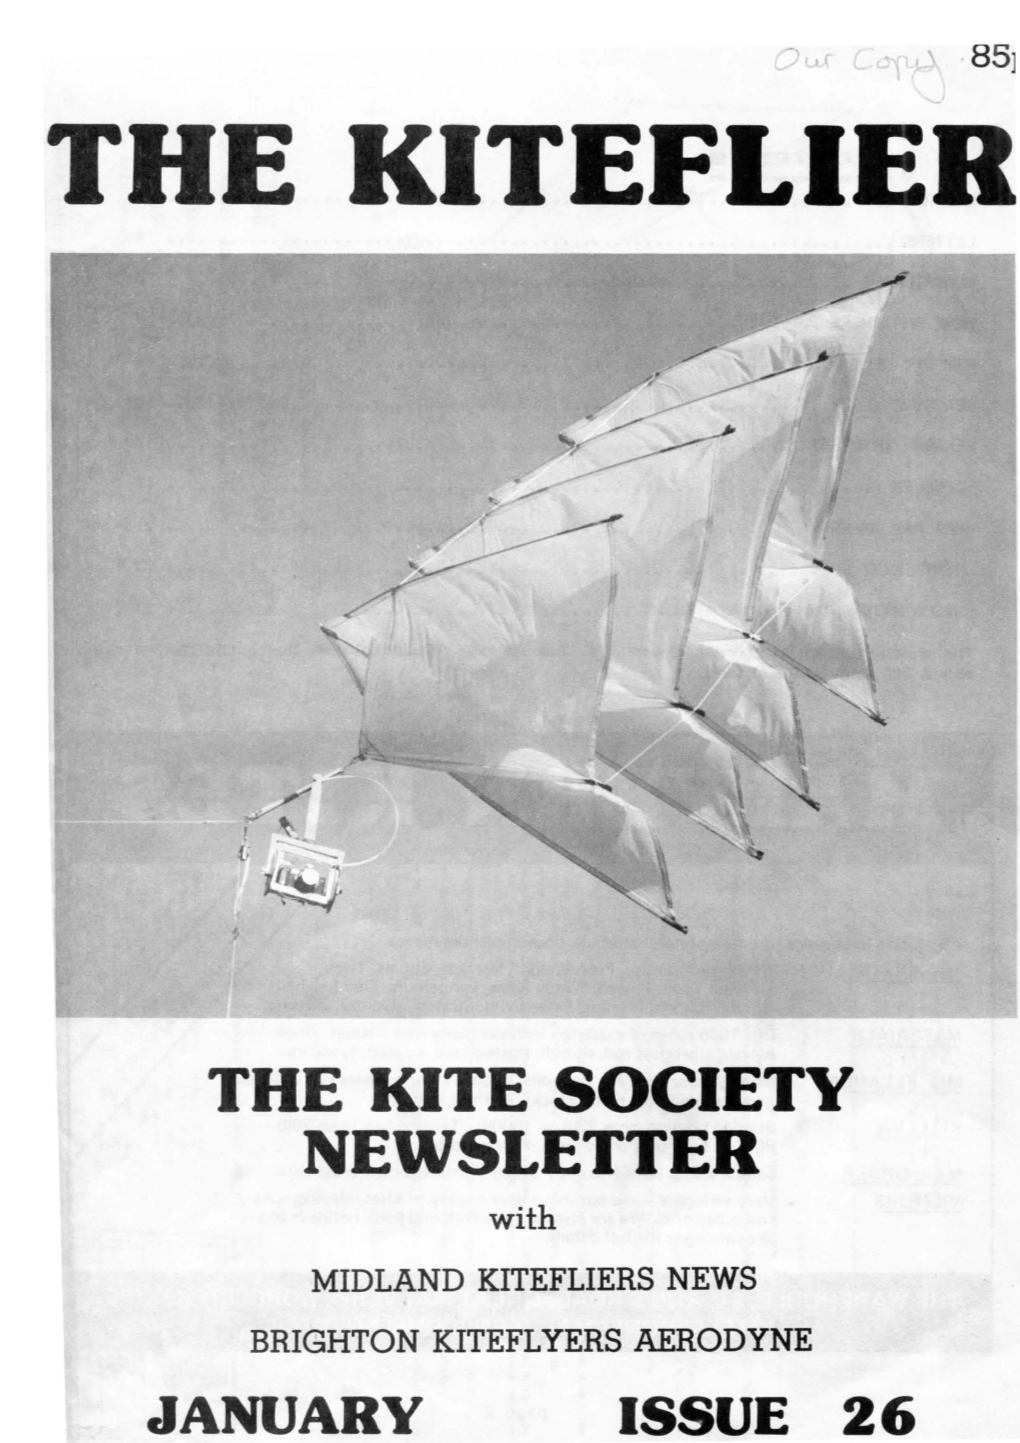 The Kite Society Newsletter